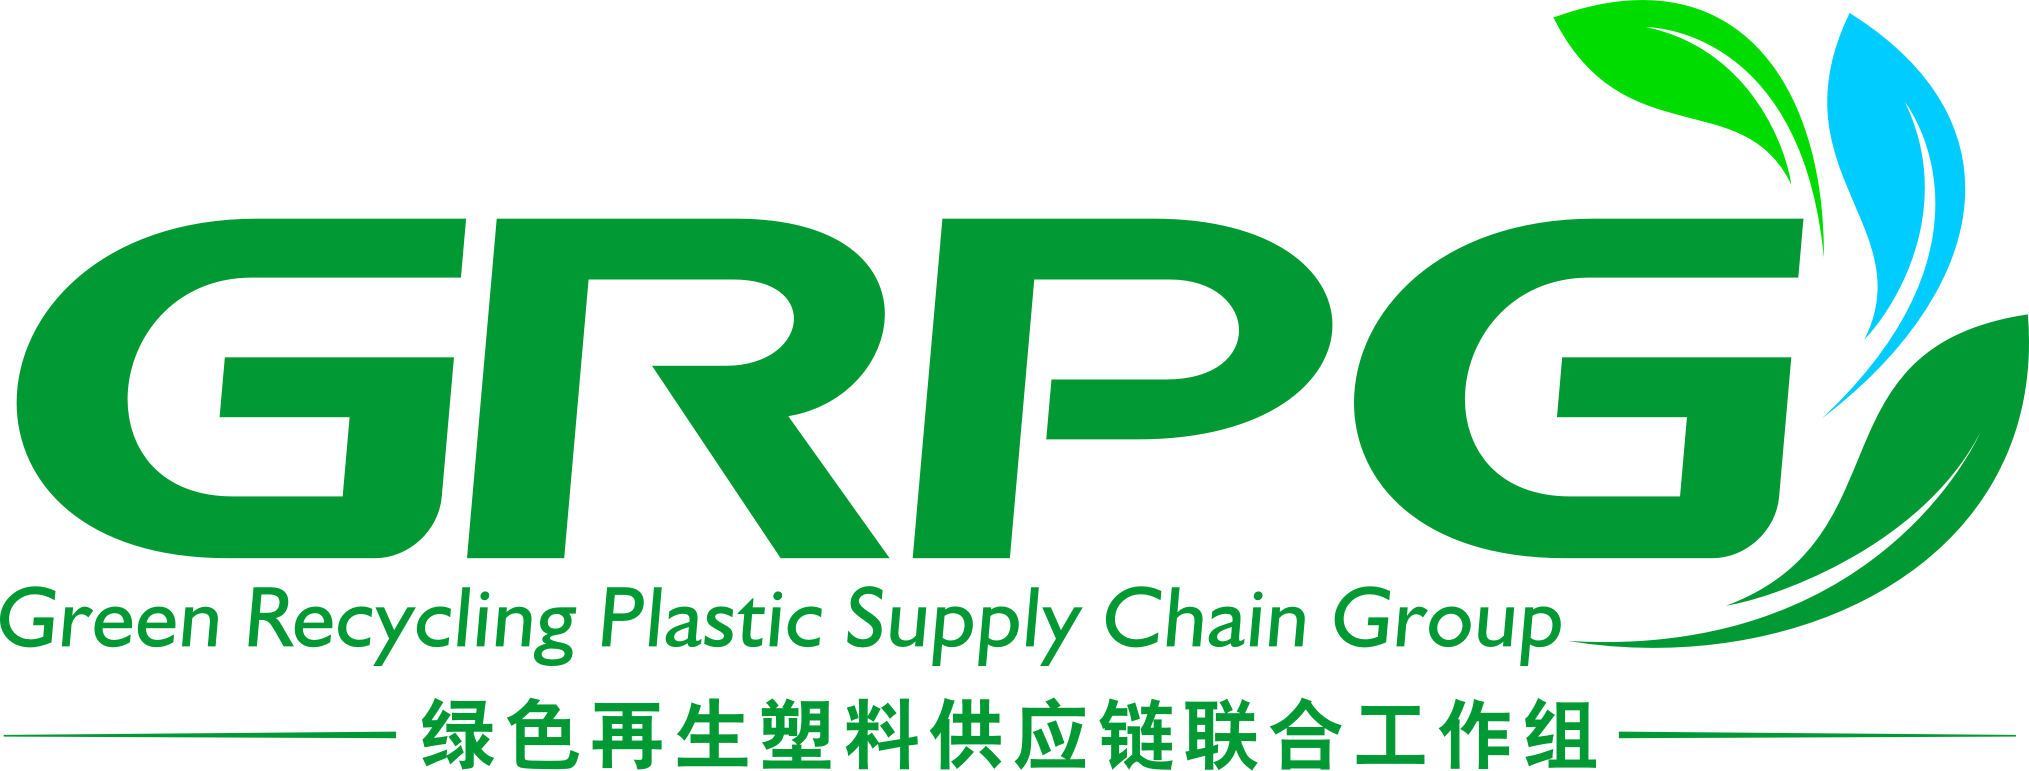 绿色再生塑料供应链联合工作组（GRPG）介绍